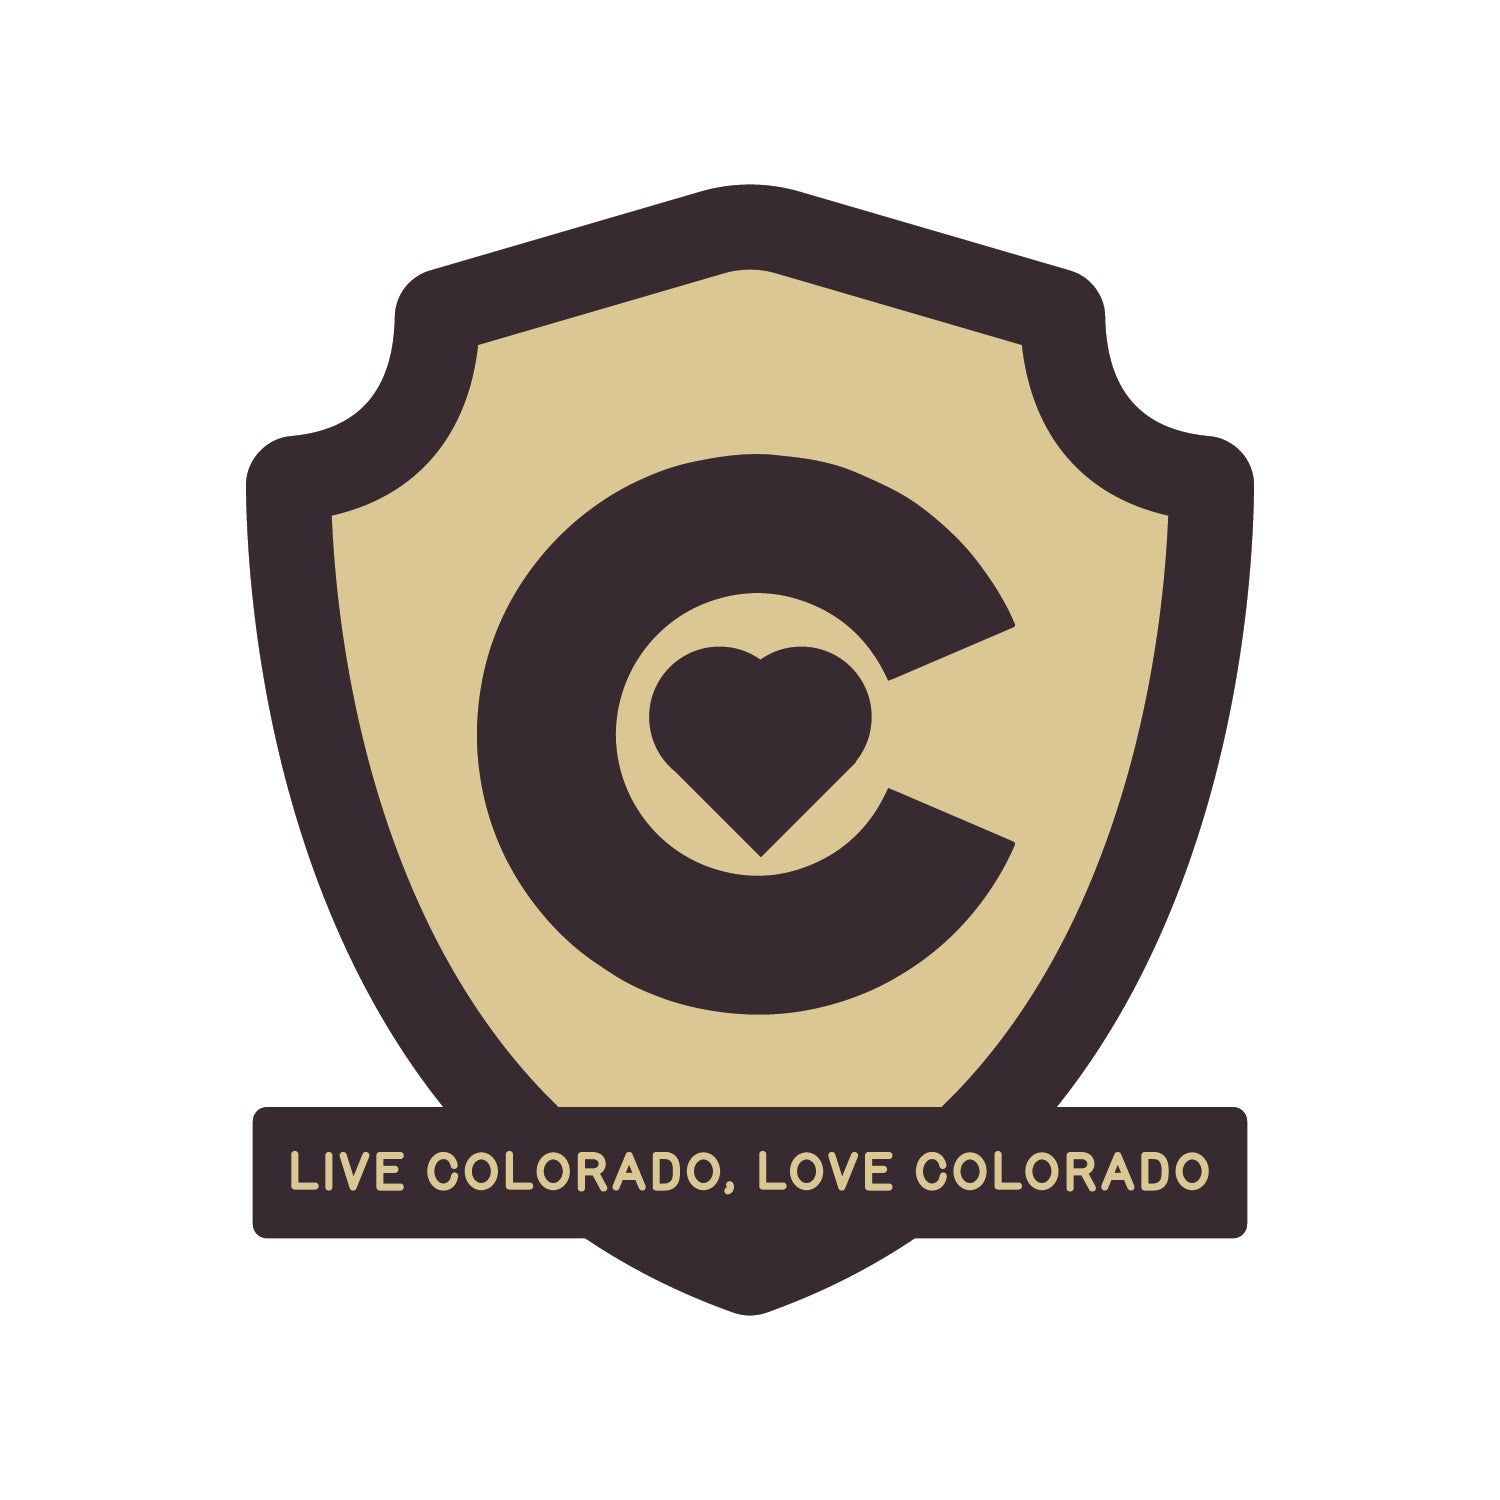 Live Colorado, Love Colorado